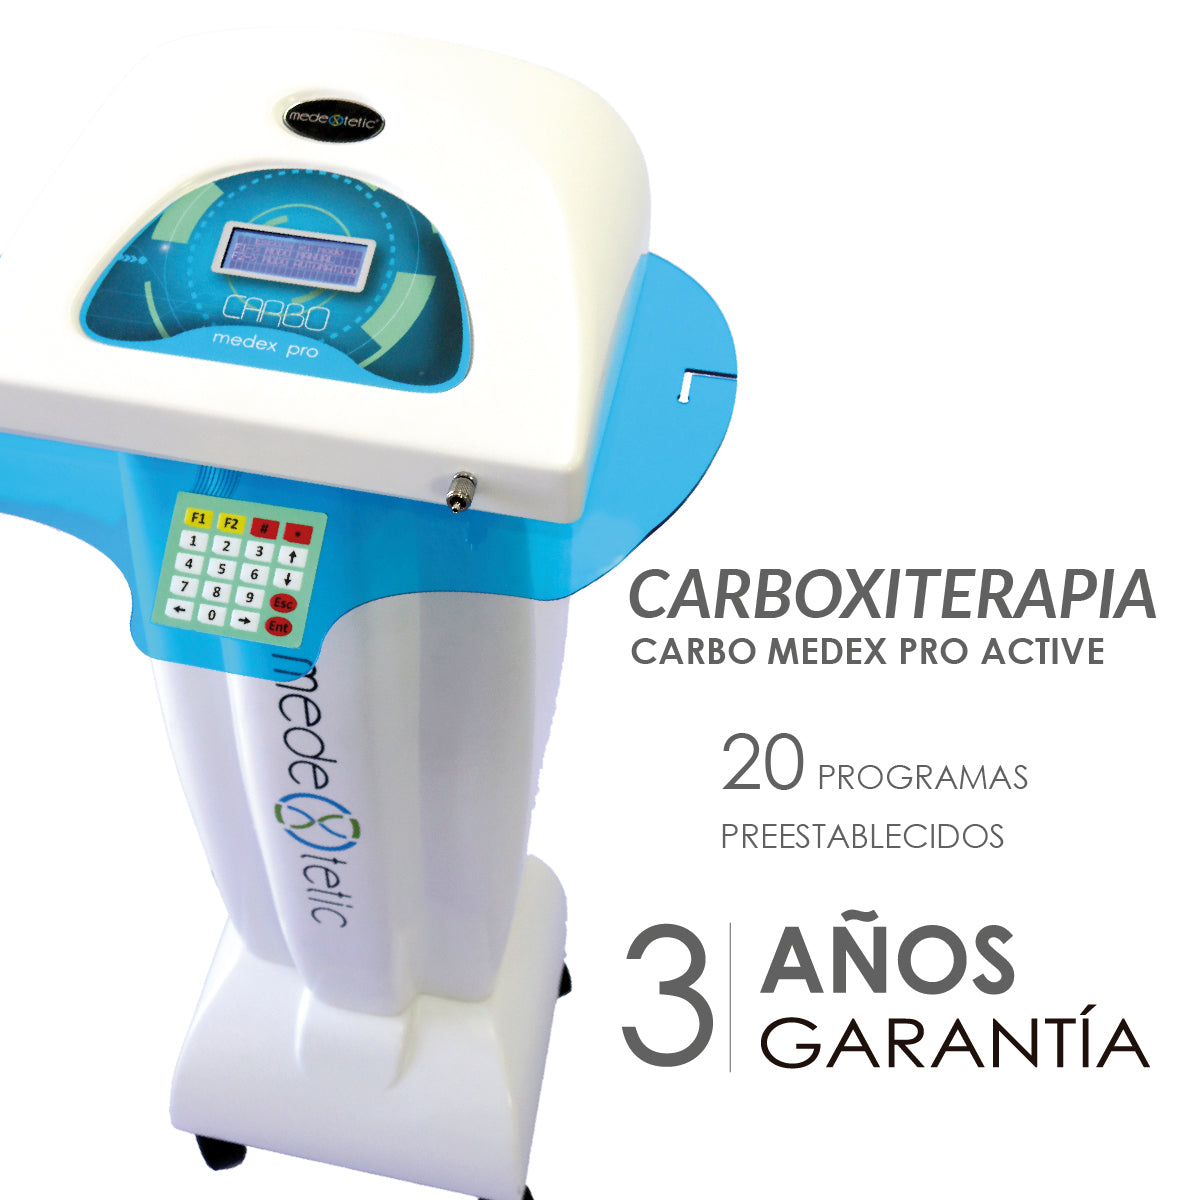 Carboxiterapia Carbo Medex Pro